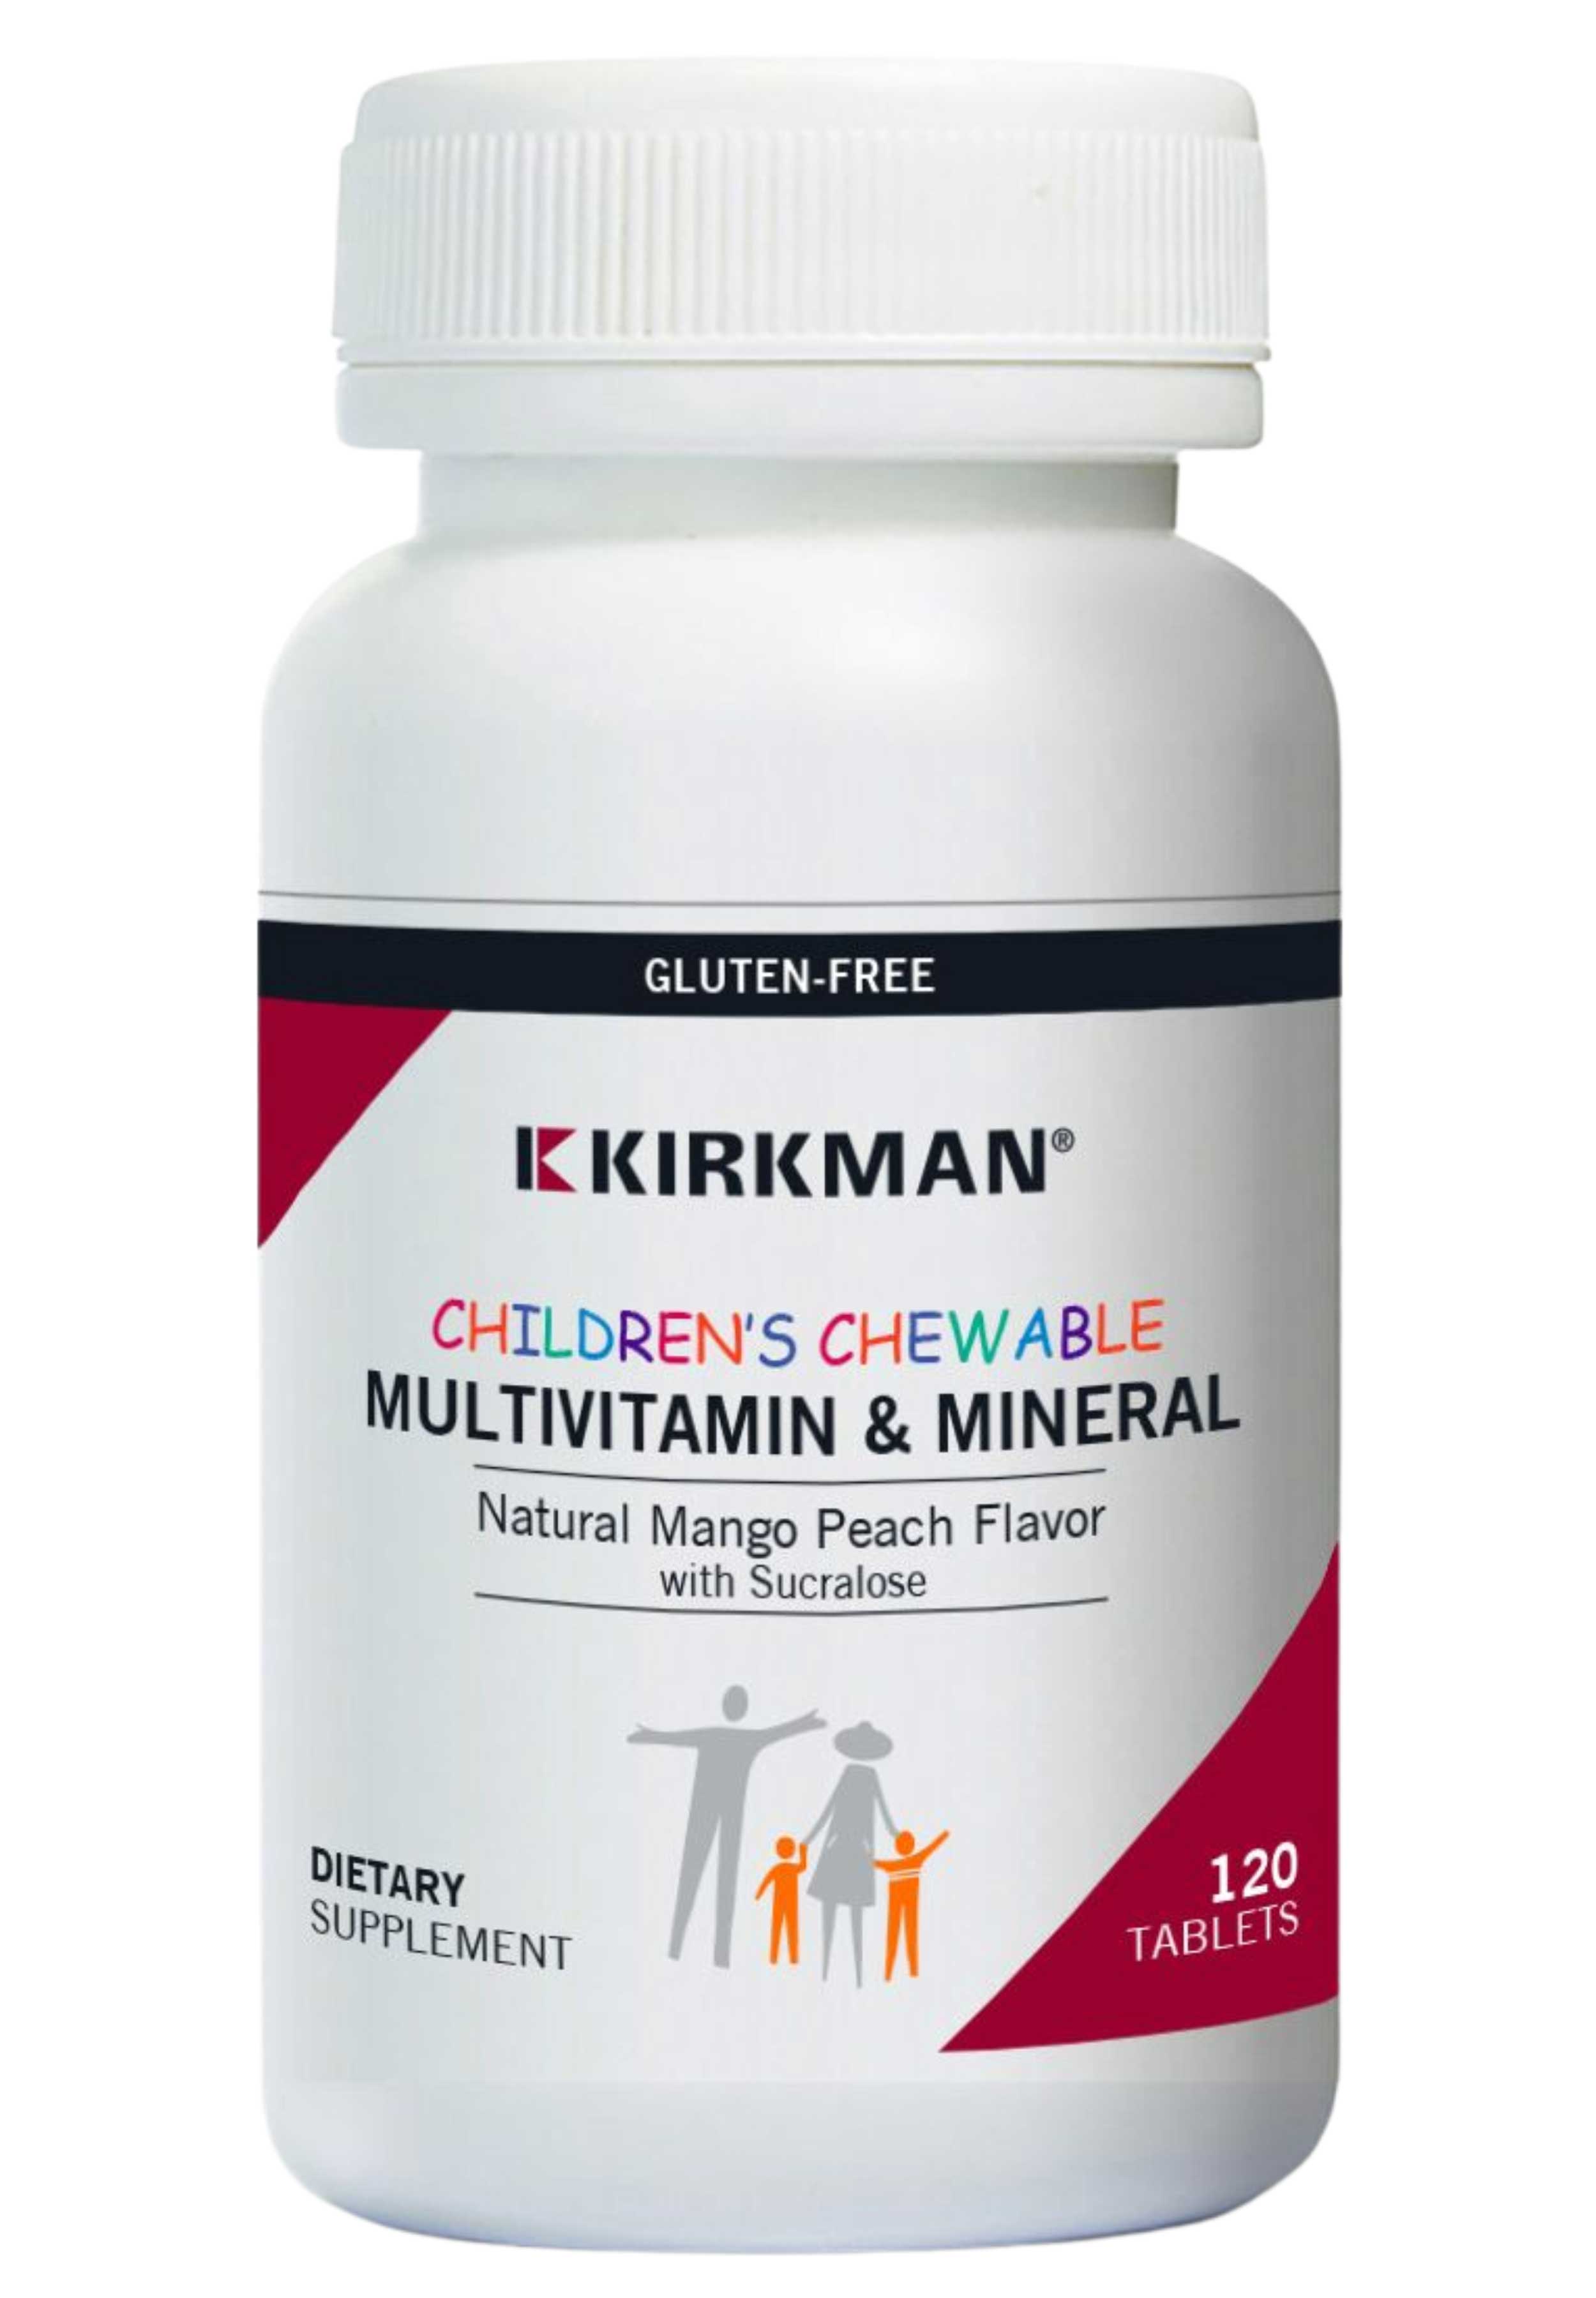 Kirkman Children's Chewable Multivitamin & Mineral Natural Mango Peach Flavor with Sucralose